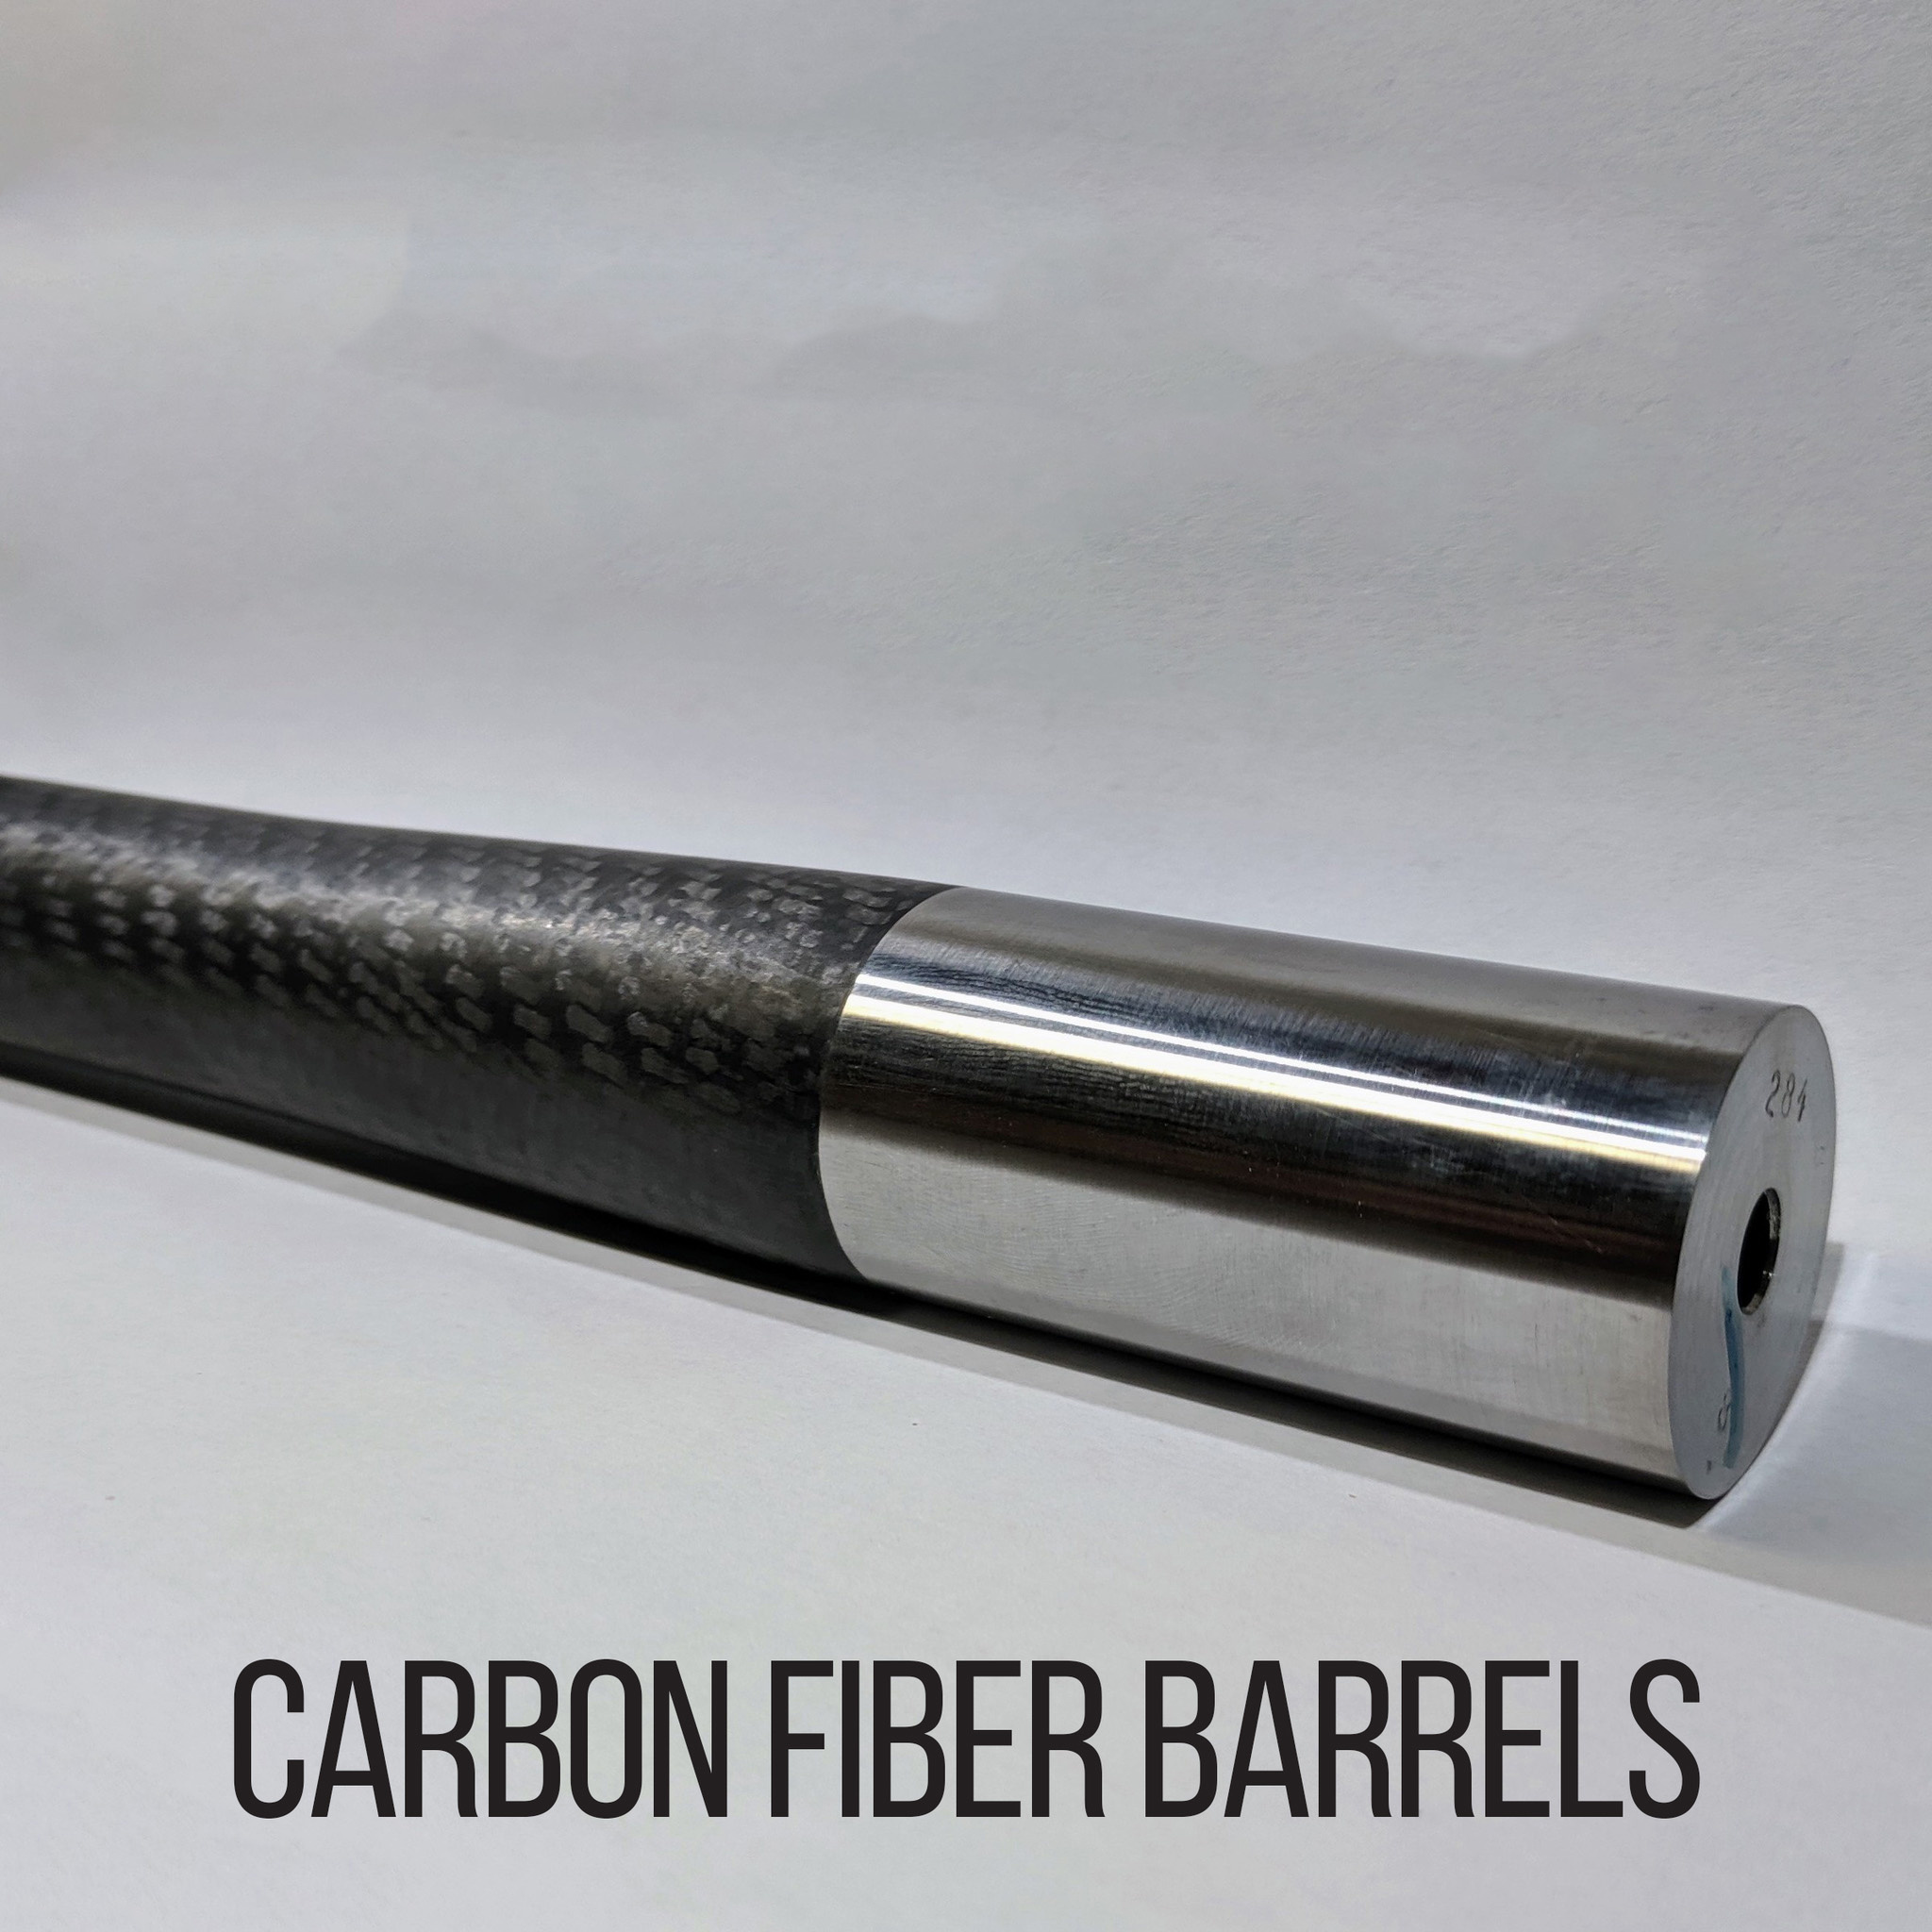 Polar Carbon Fiber Barrels